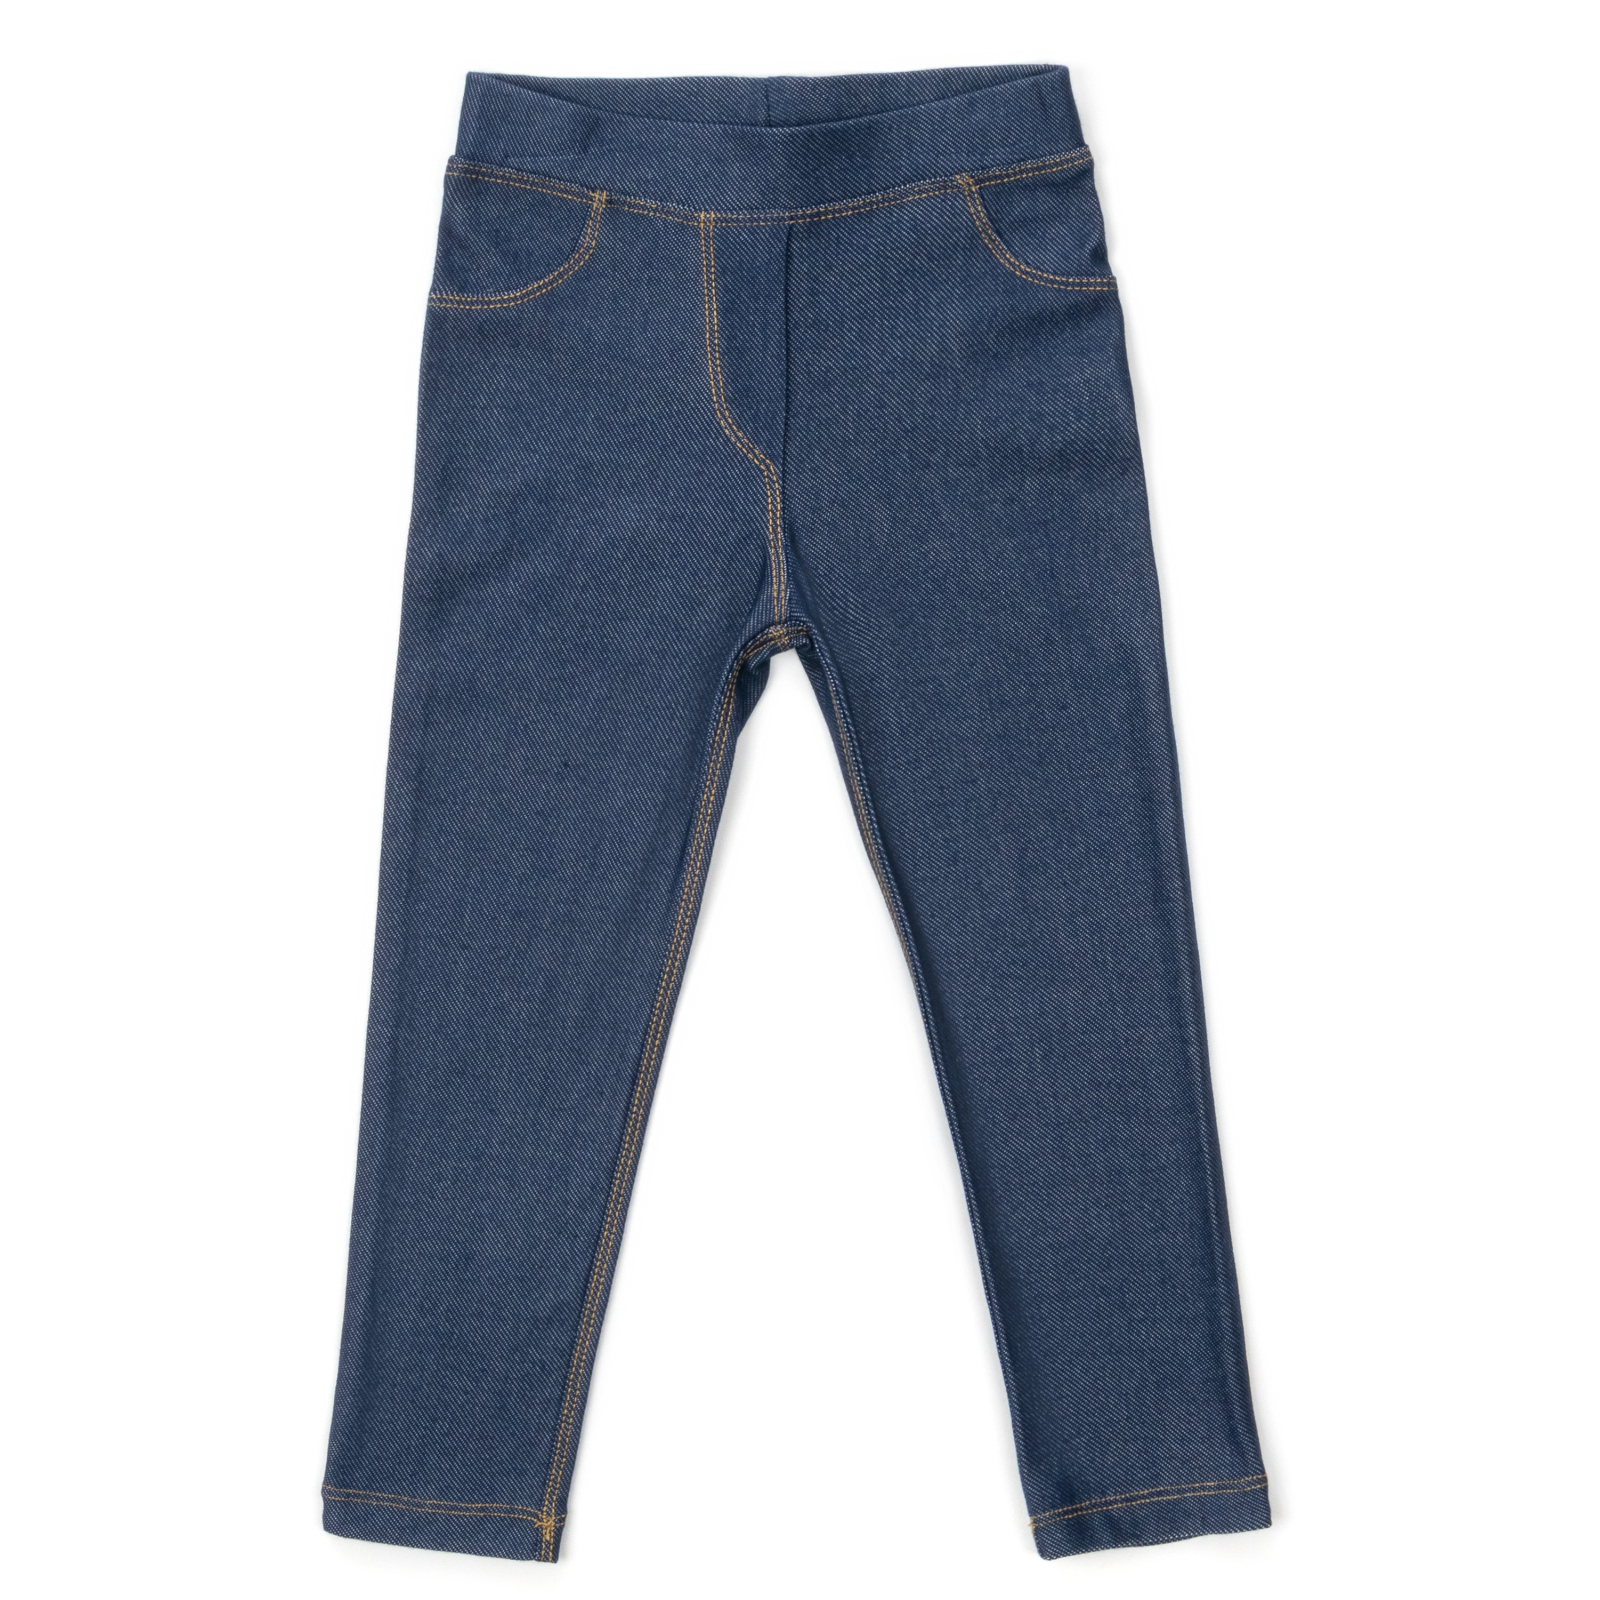 Лосины Breeze трикотажные (4415-116G-jeans)